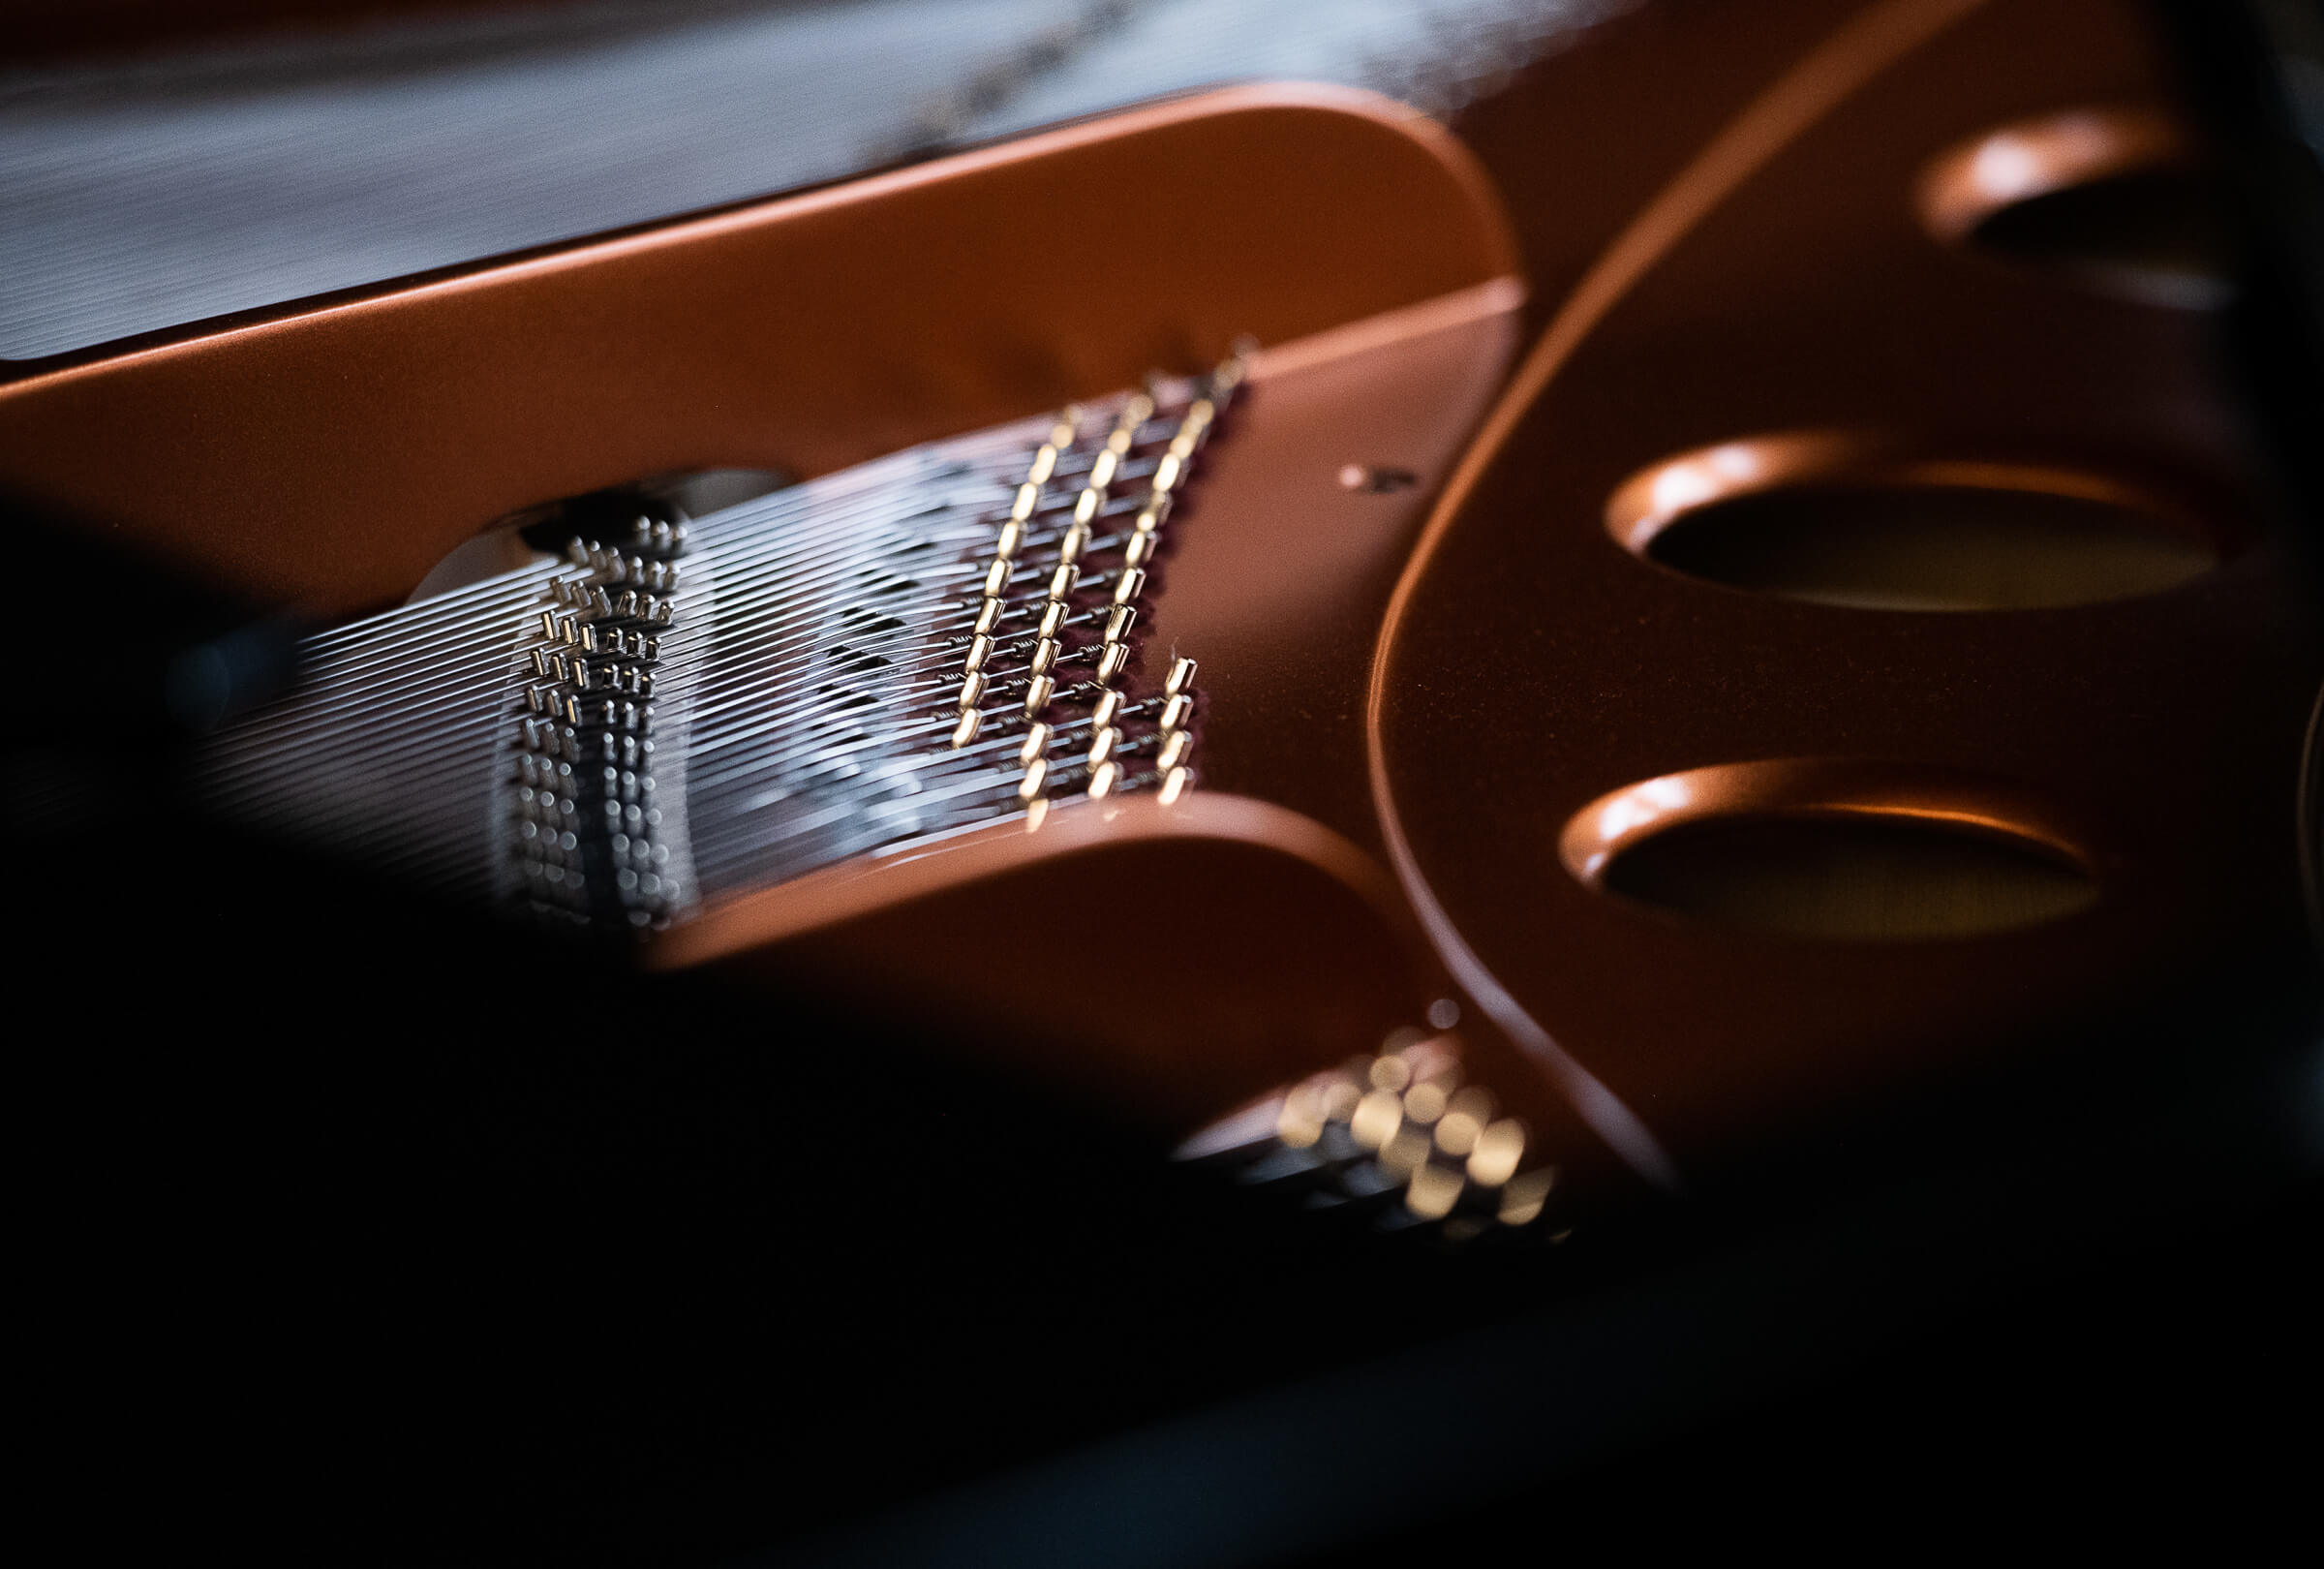 Innenleben eines Pianos im Detail